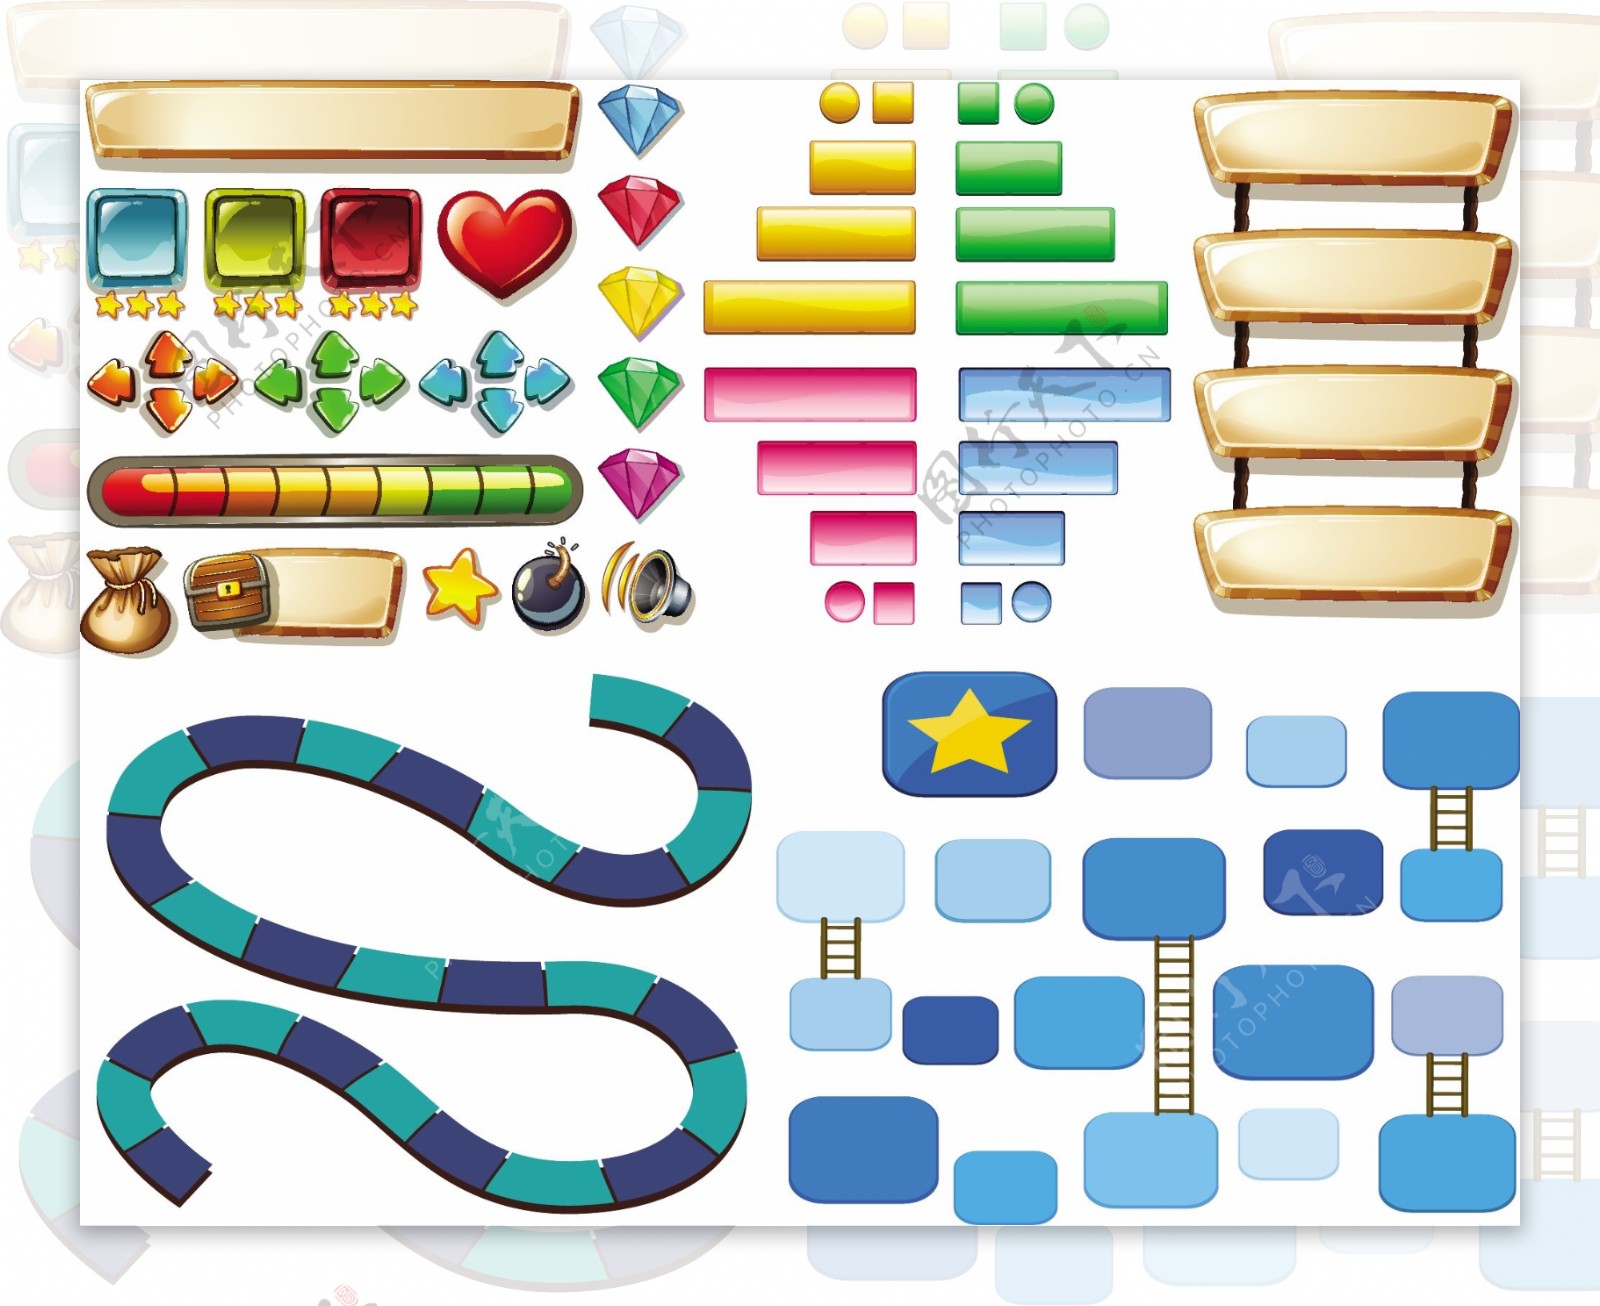 游戏模板与其他元素的插图